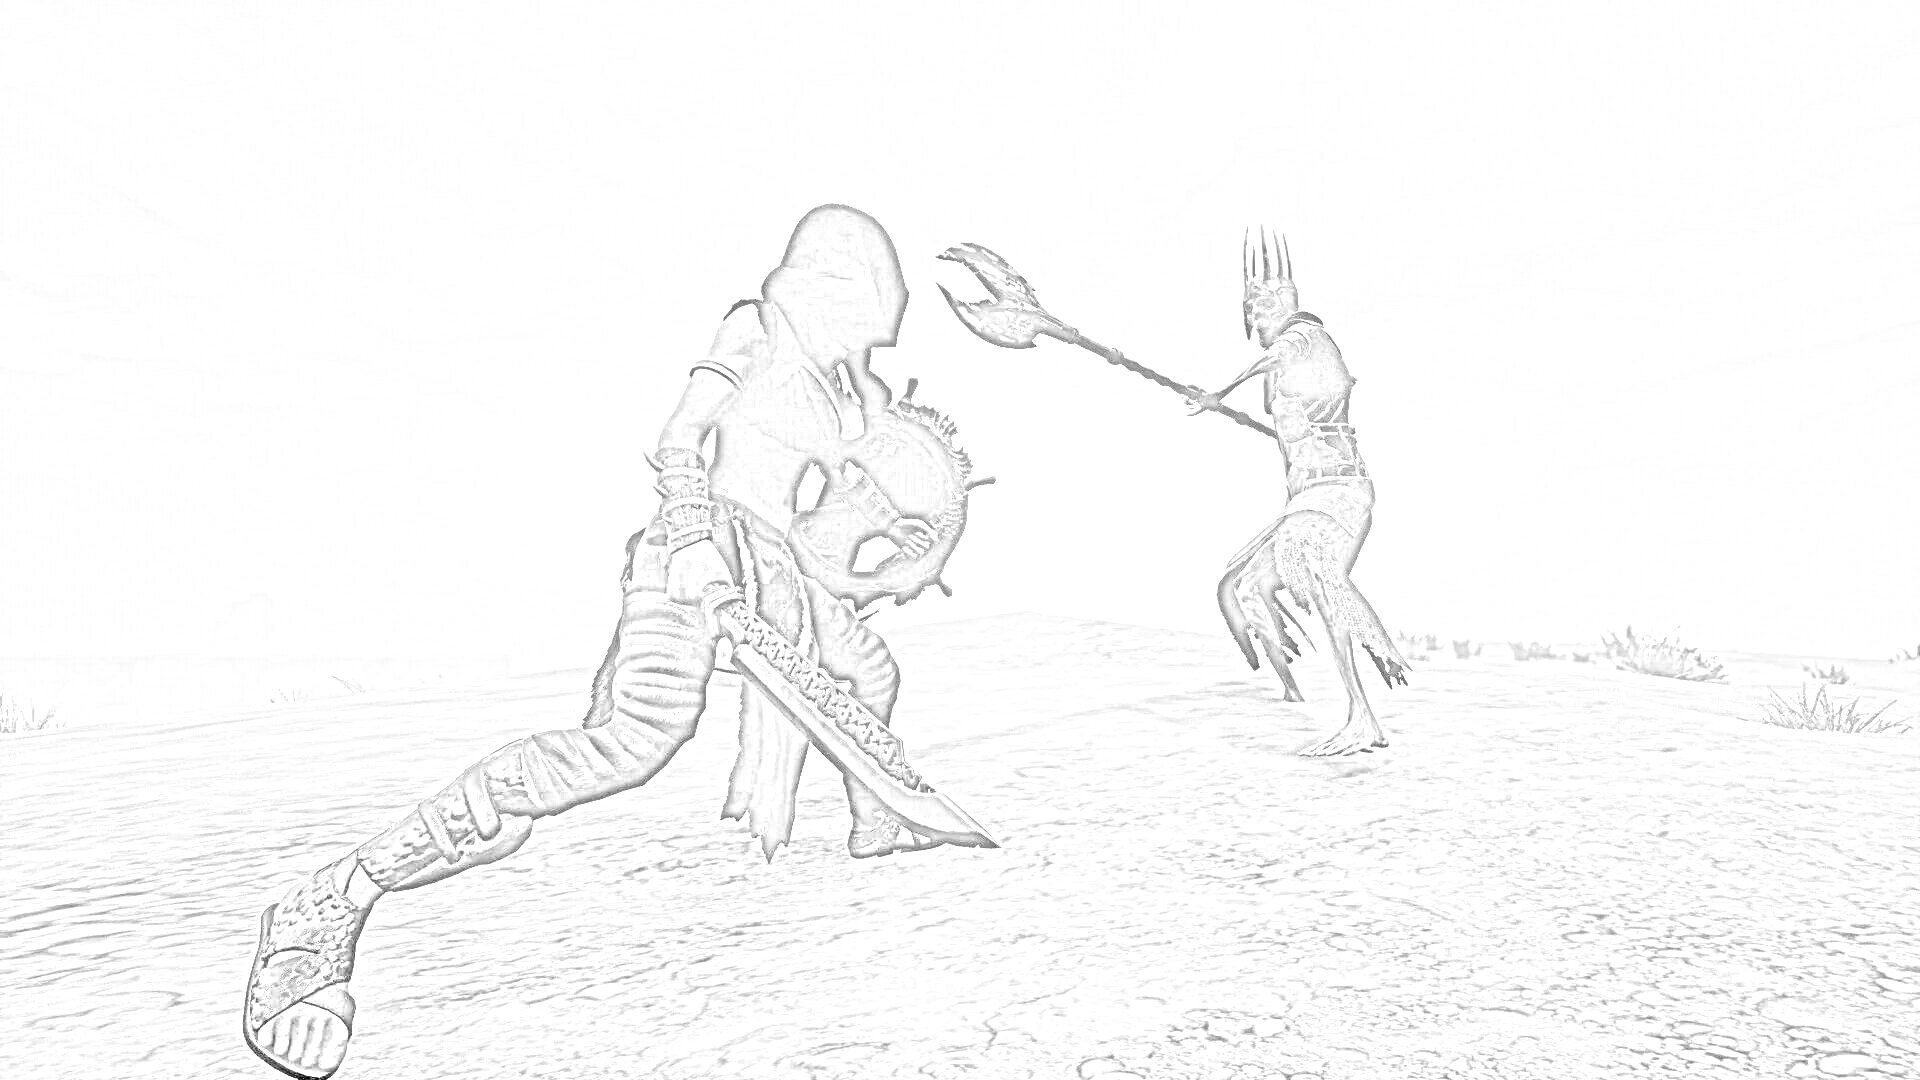 Раскраска Схватка на пустынной равнине: персонаж с мечом против существа с рогатым черепом